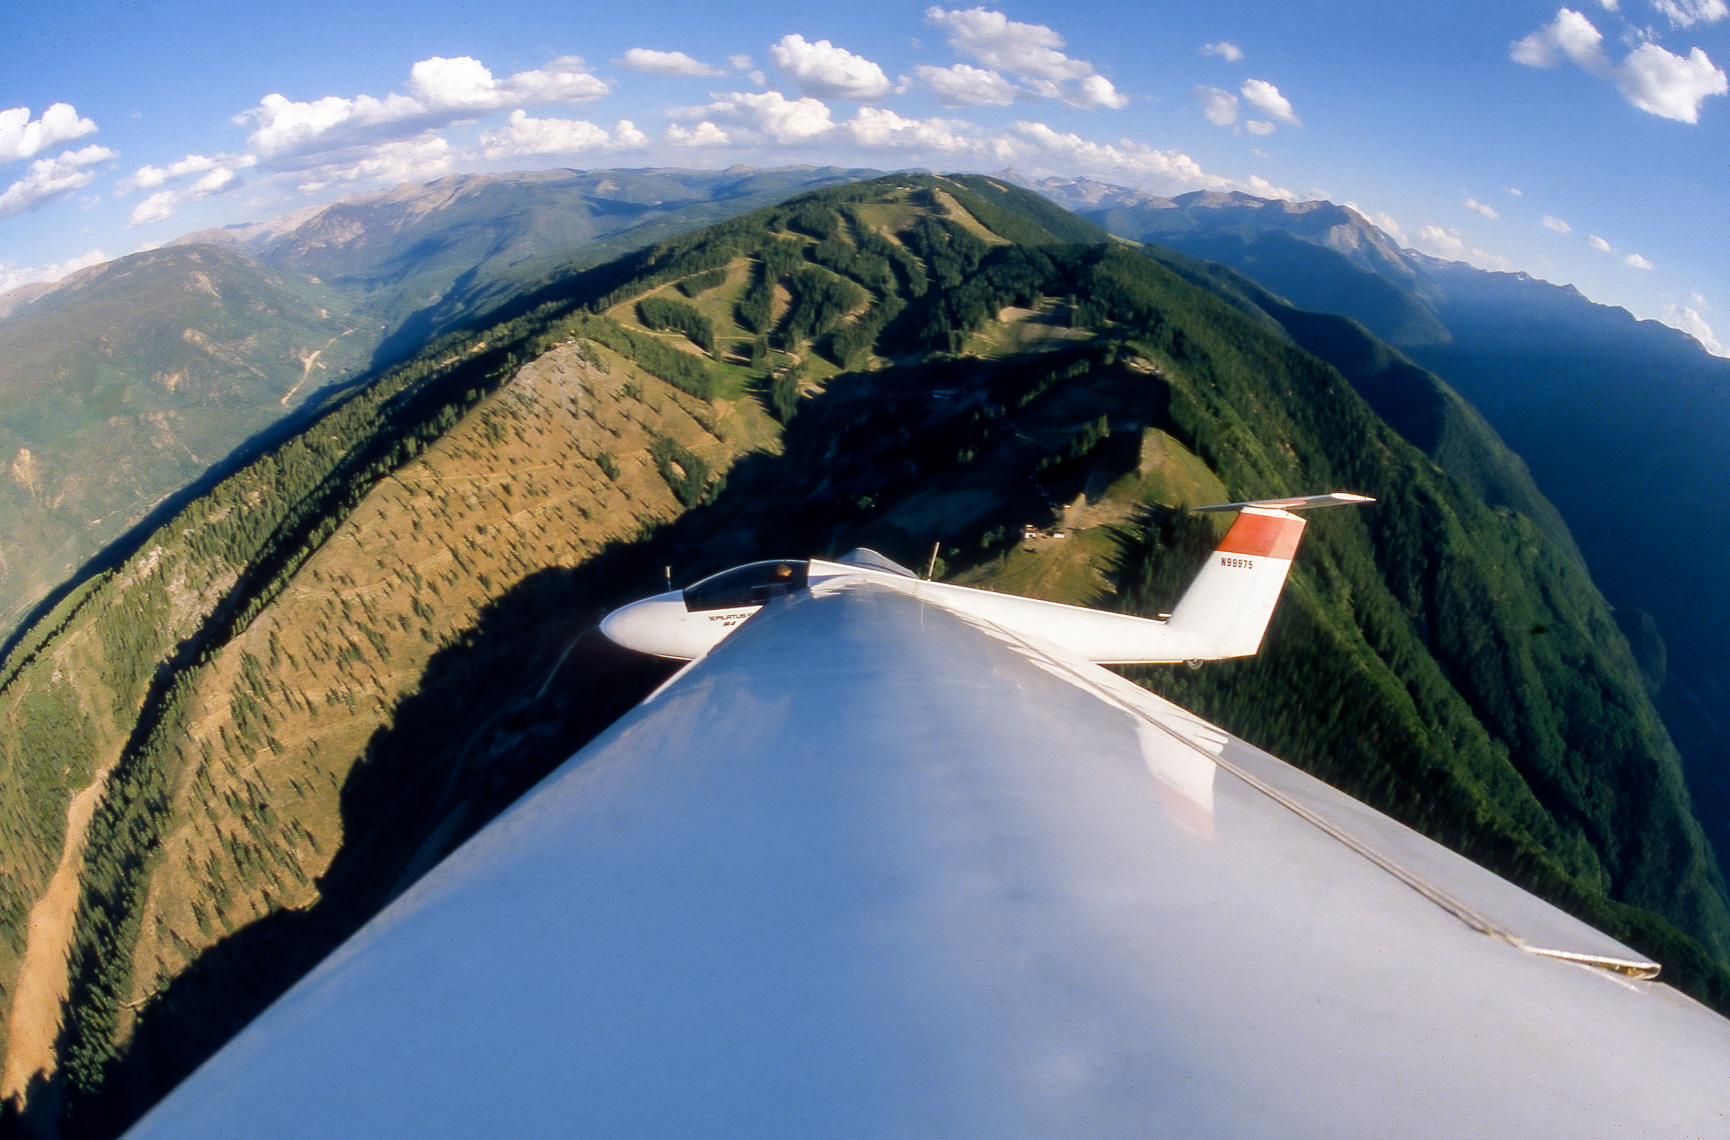 TP_1-30. A gliders view of Aspen, Colorado.  